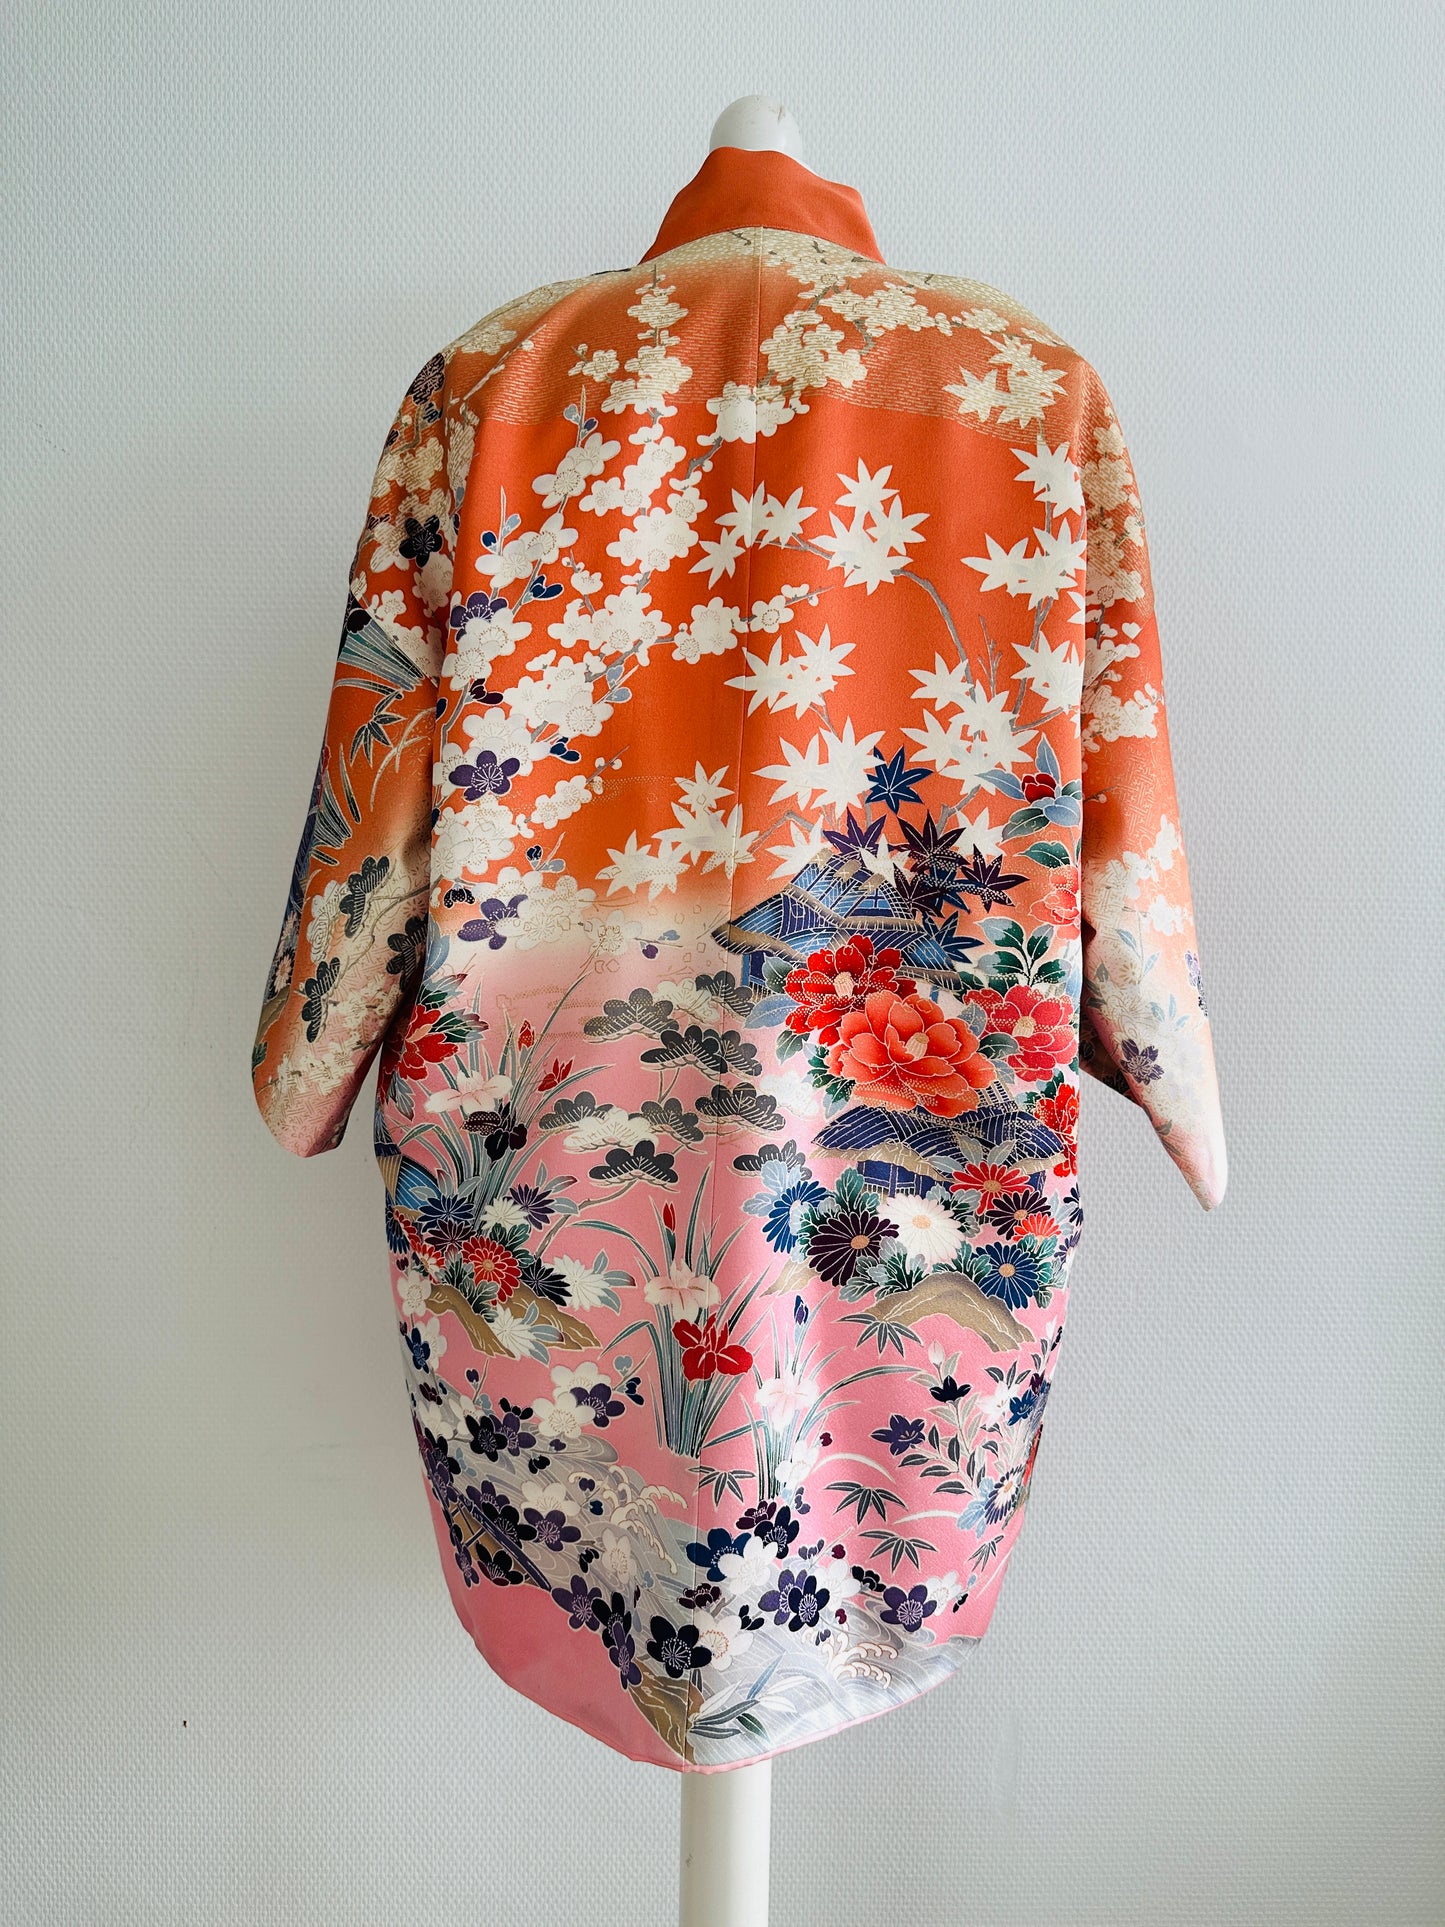 【Pinkorange, la pleine floraison des fleurs】 veste heureuse ＜ Excellent ・ Silk ＞ pour les hommes, pour les femmes, le kimono japonais, les vêtements unisexais japonais, l'unisexe, les cadeaux japonais, les designs originaux